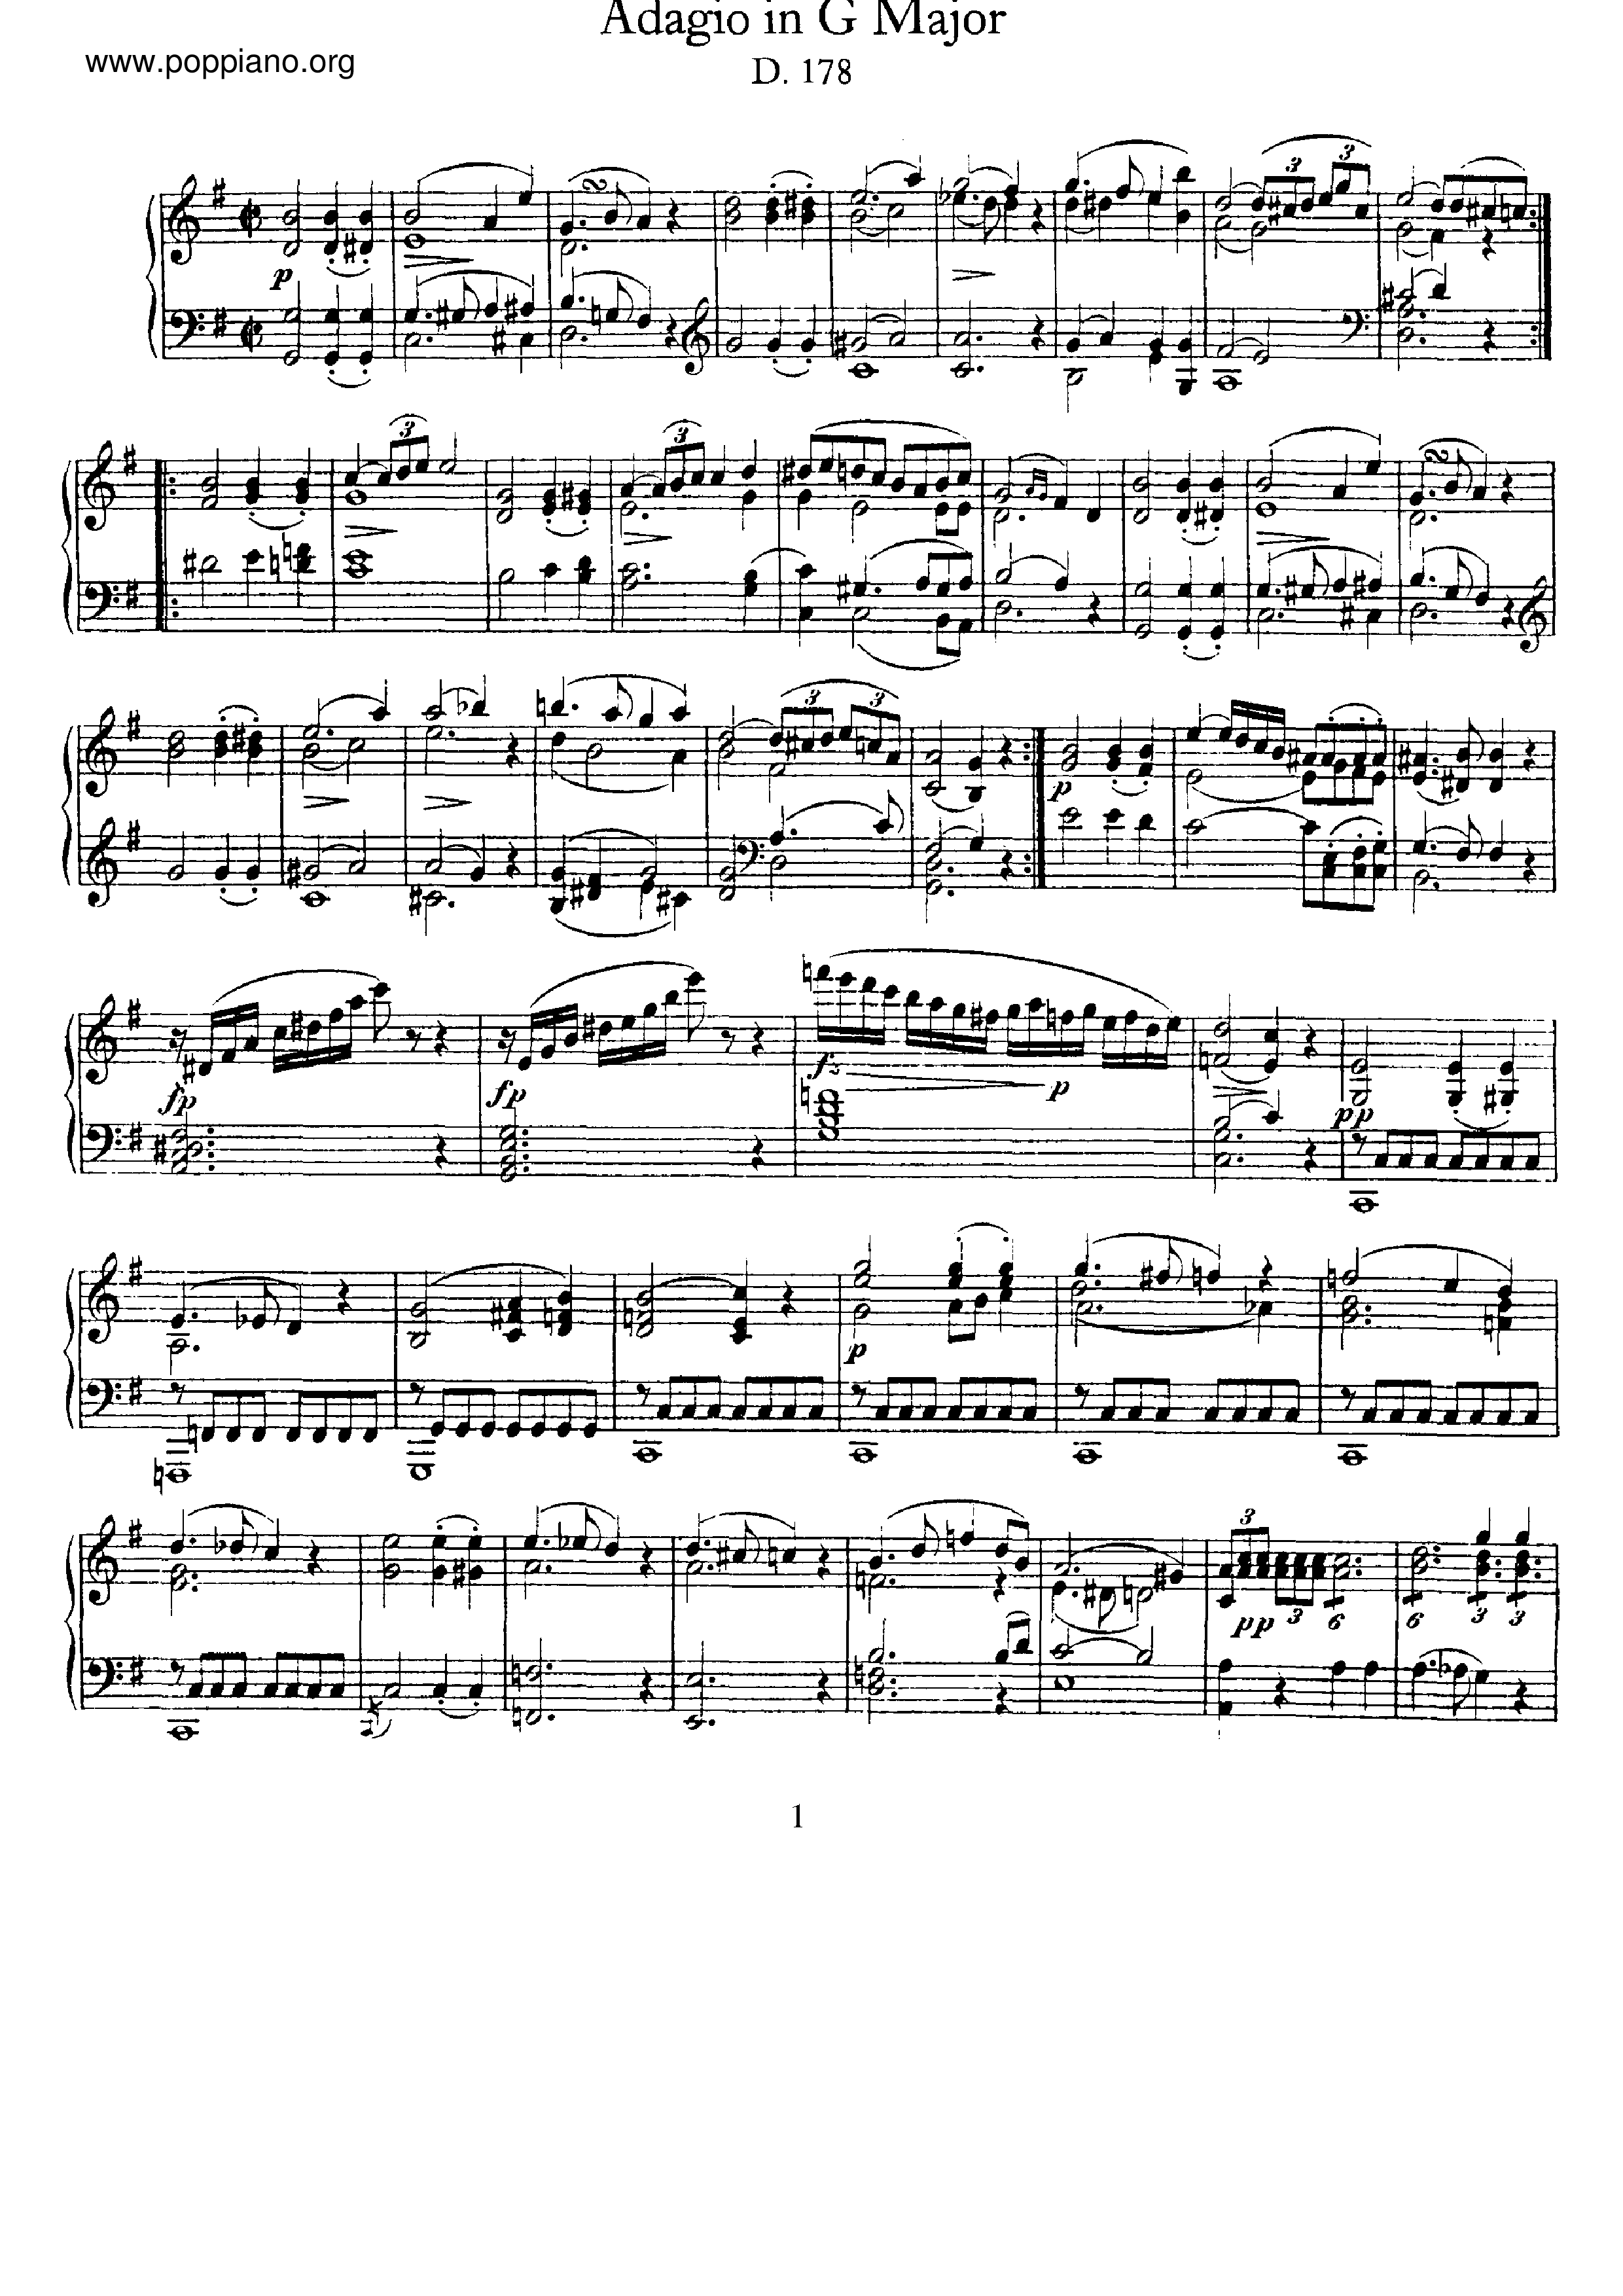 Adagio, D.178 Score